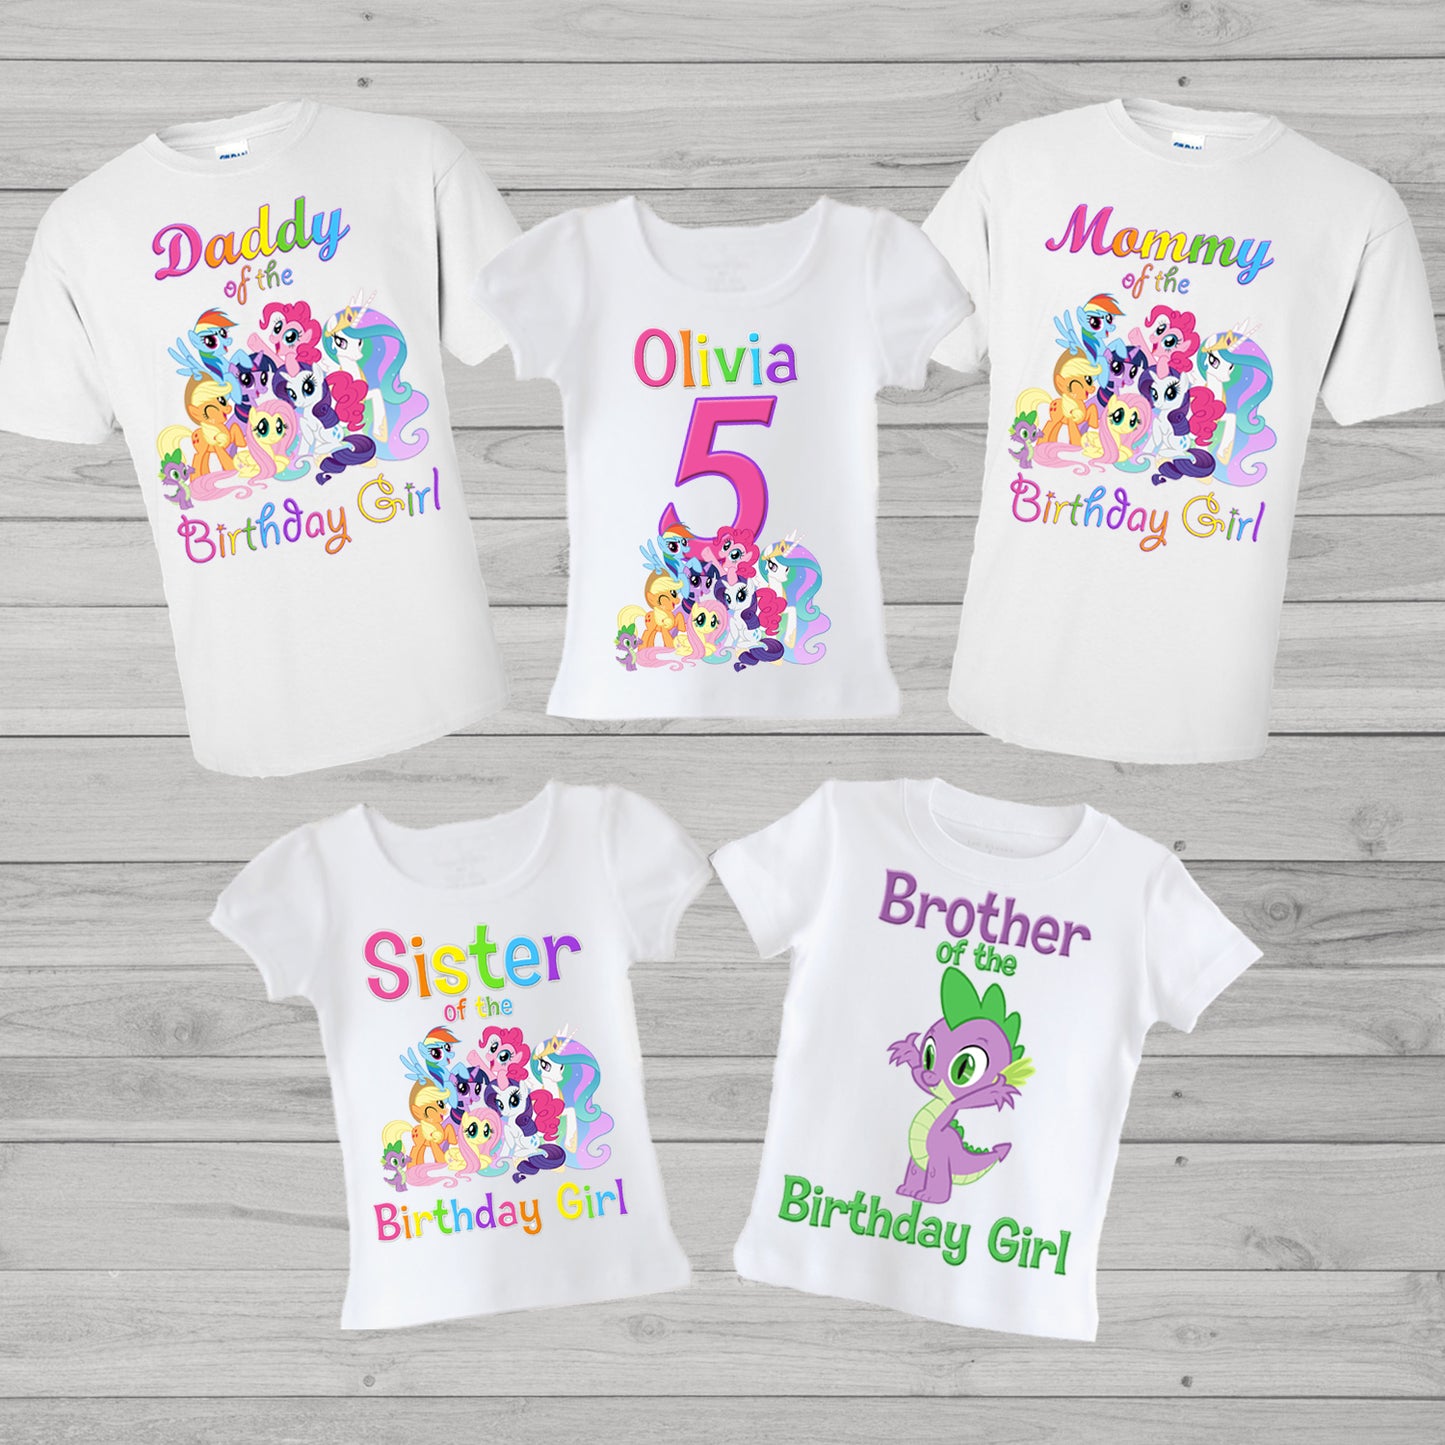 My Little Pony Family Birthday shirts